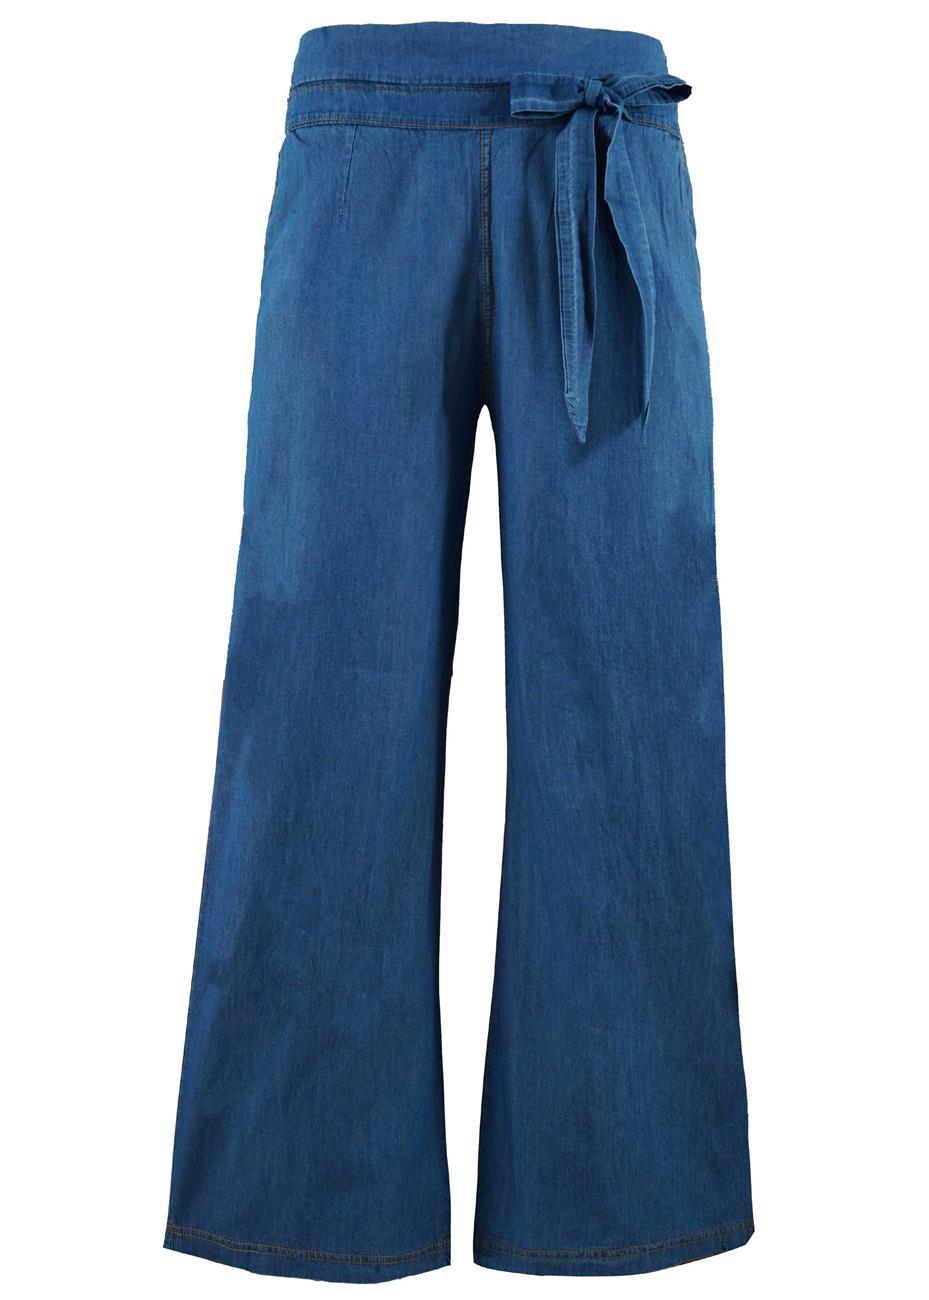 Γυναικείο παντελόνα jean αστραγάλουDenim collection.